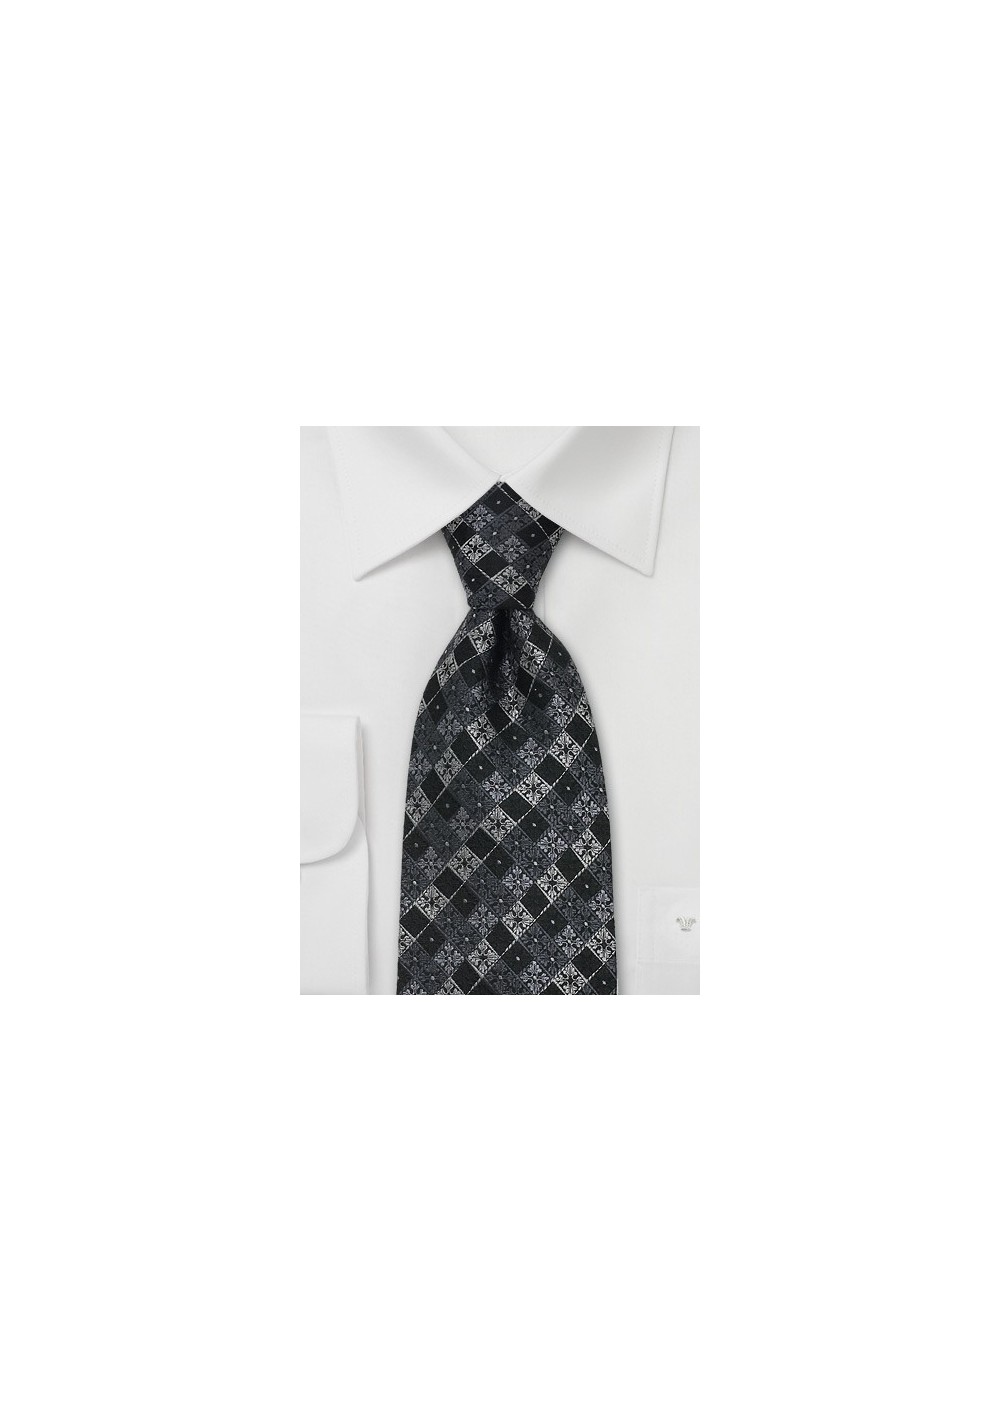 Modern Designer Tie by Chevalier